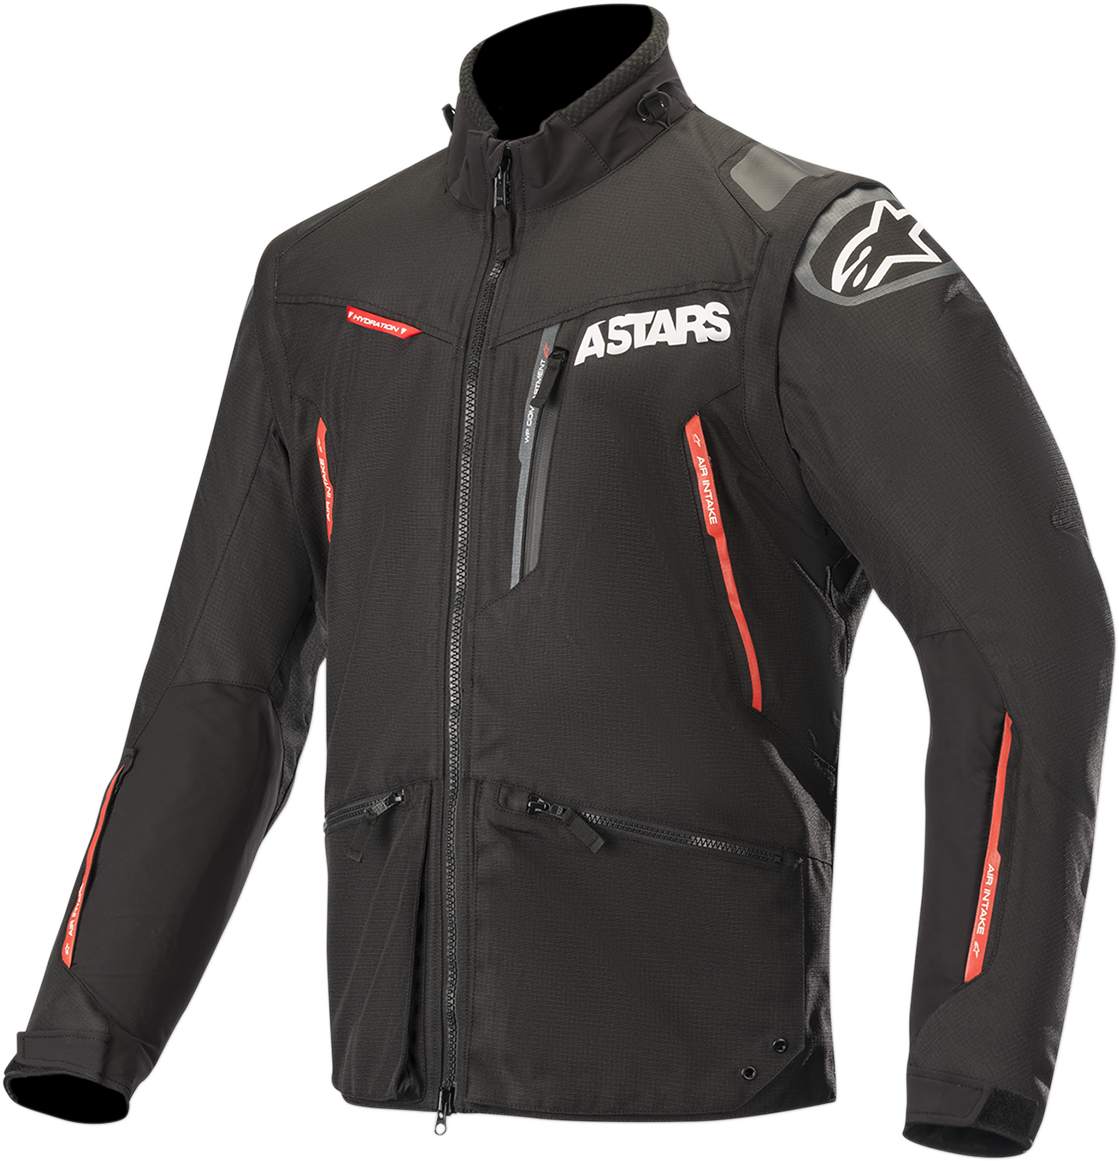 ALPINESTARS Venture-R Jacket - Black/Red - Medium 3703019-13-M